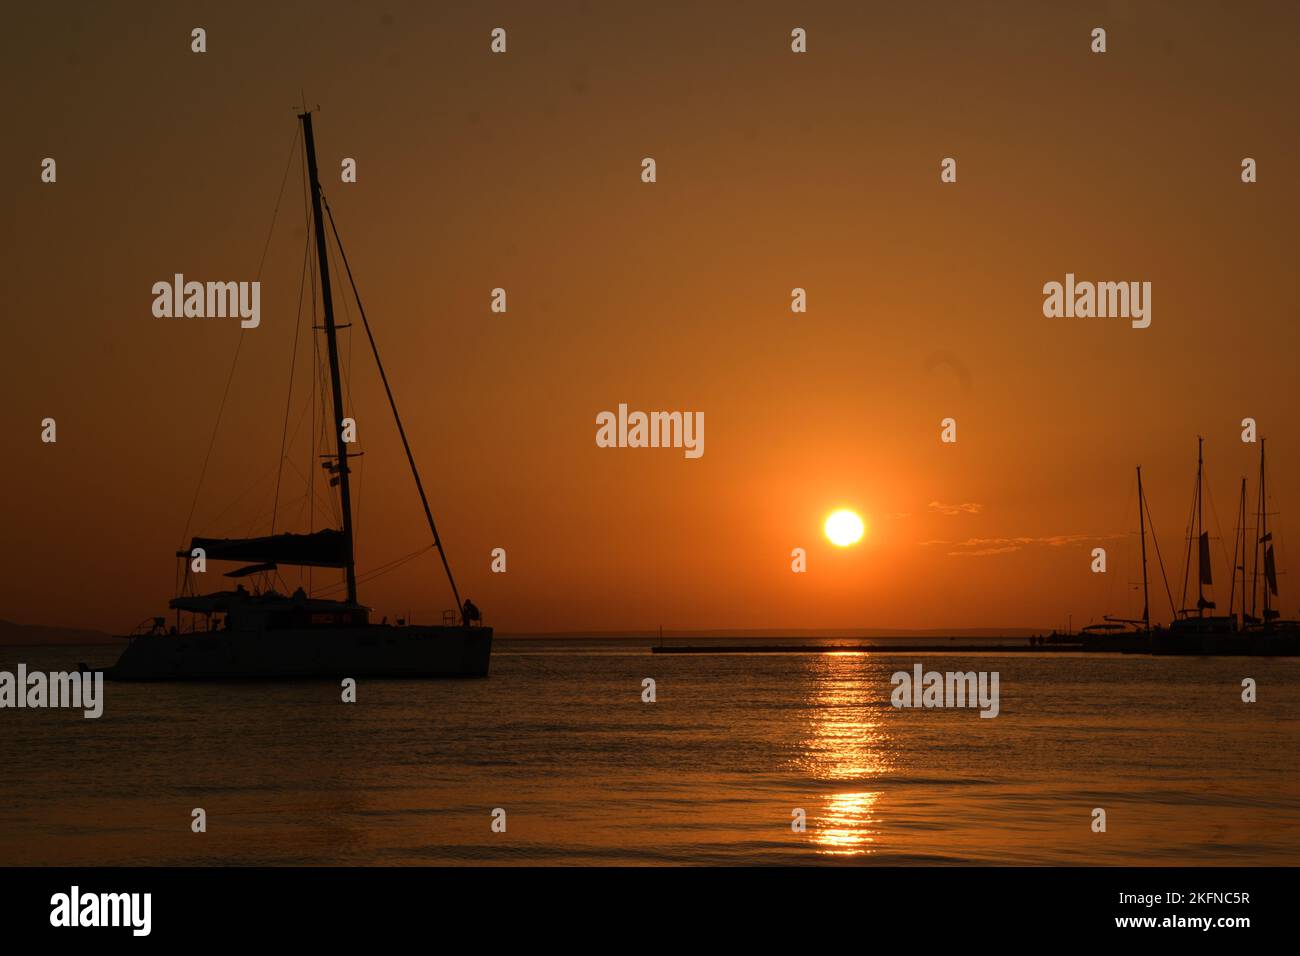 Prendre des photos avant le coucher du soleil en Croatie Banque D'Images